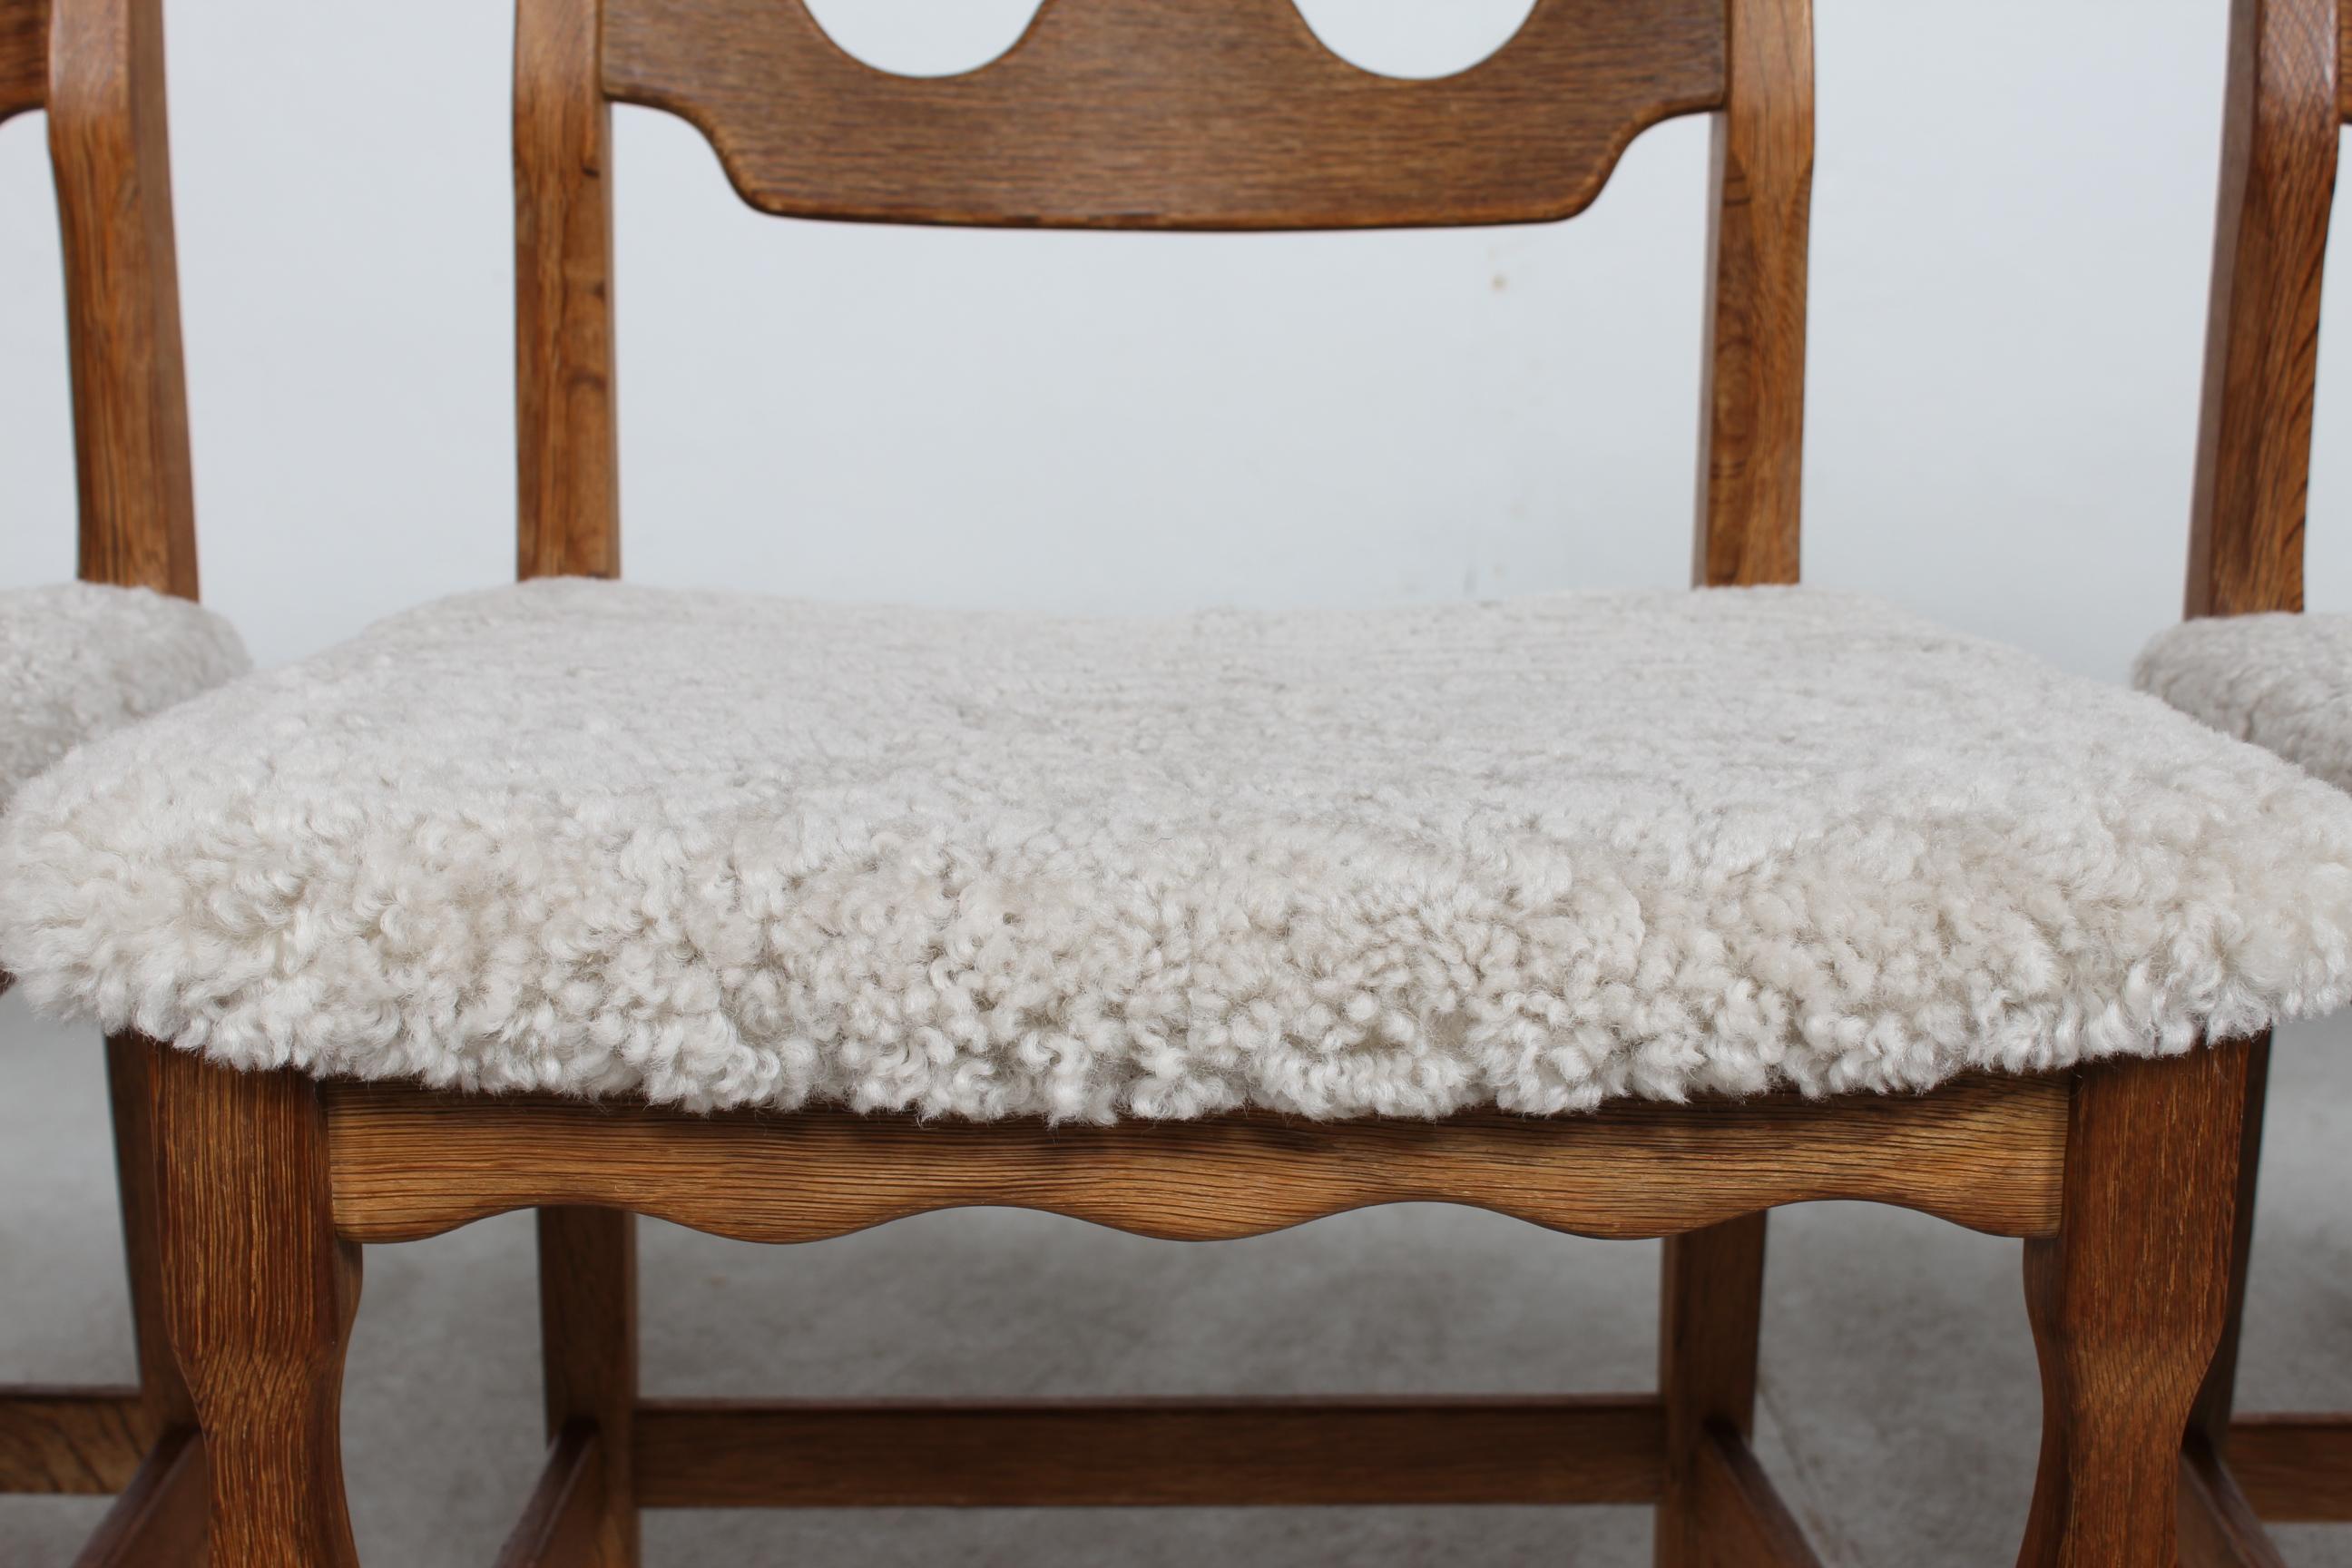 Hier ist ein Satz von 4 dänischen Vintage-Rasierklingenstühlen im tollen Landhausstil. 
Sie wurden von Henning Kjærnulf entworfen und von der dänischen Firma Nyrup Møbelfabrik/ EG Furniture hergestellt.
Die Stühle sind aus massivem Eichenholz